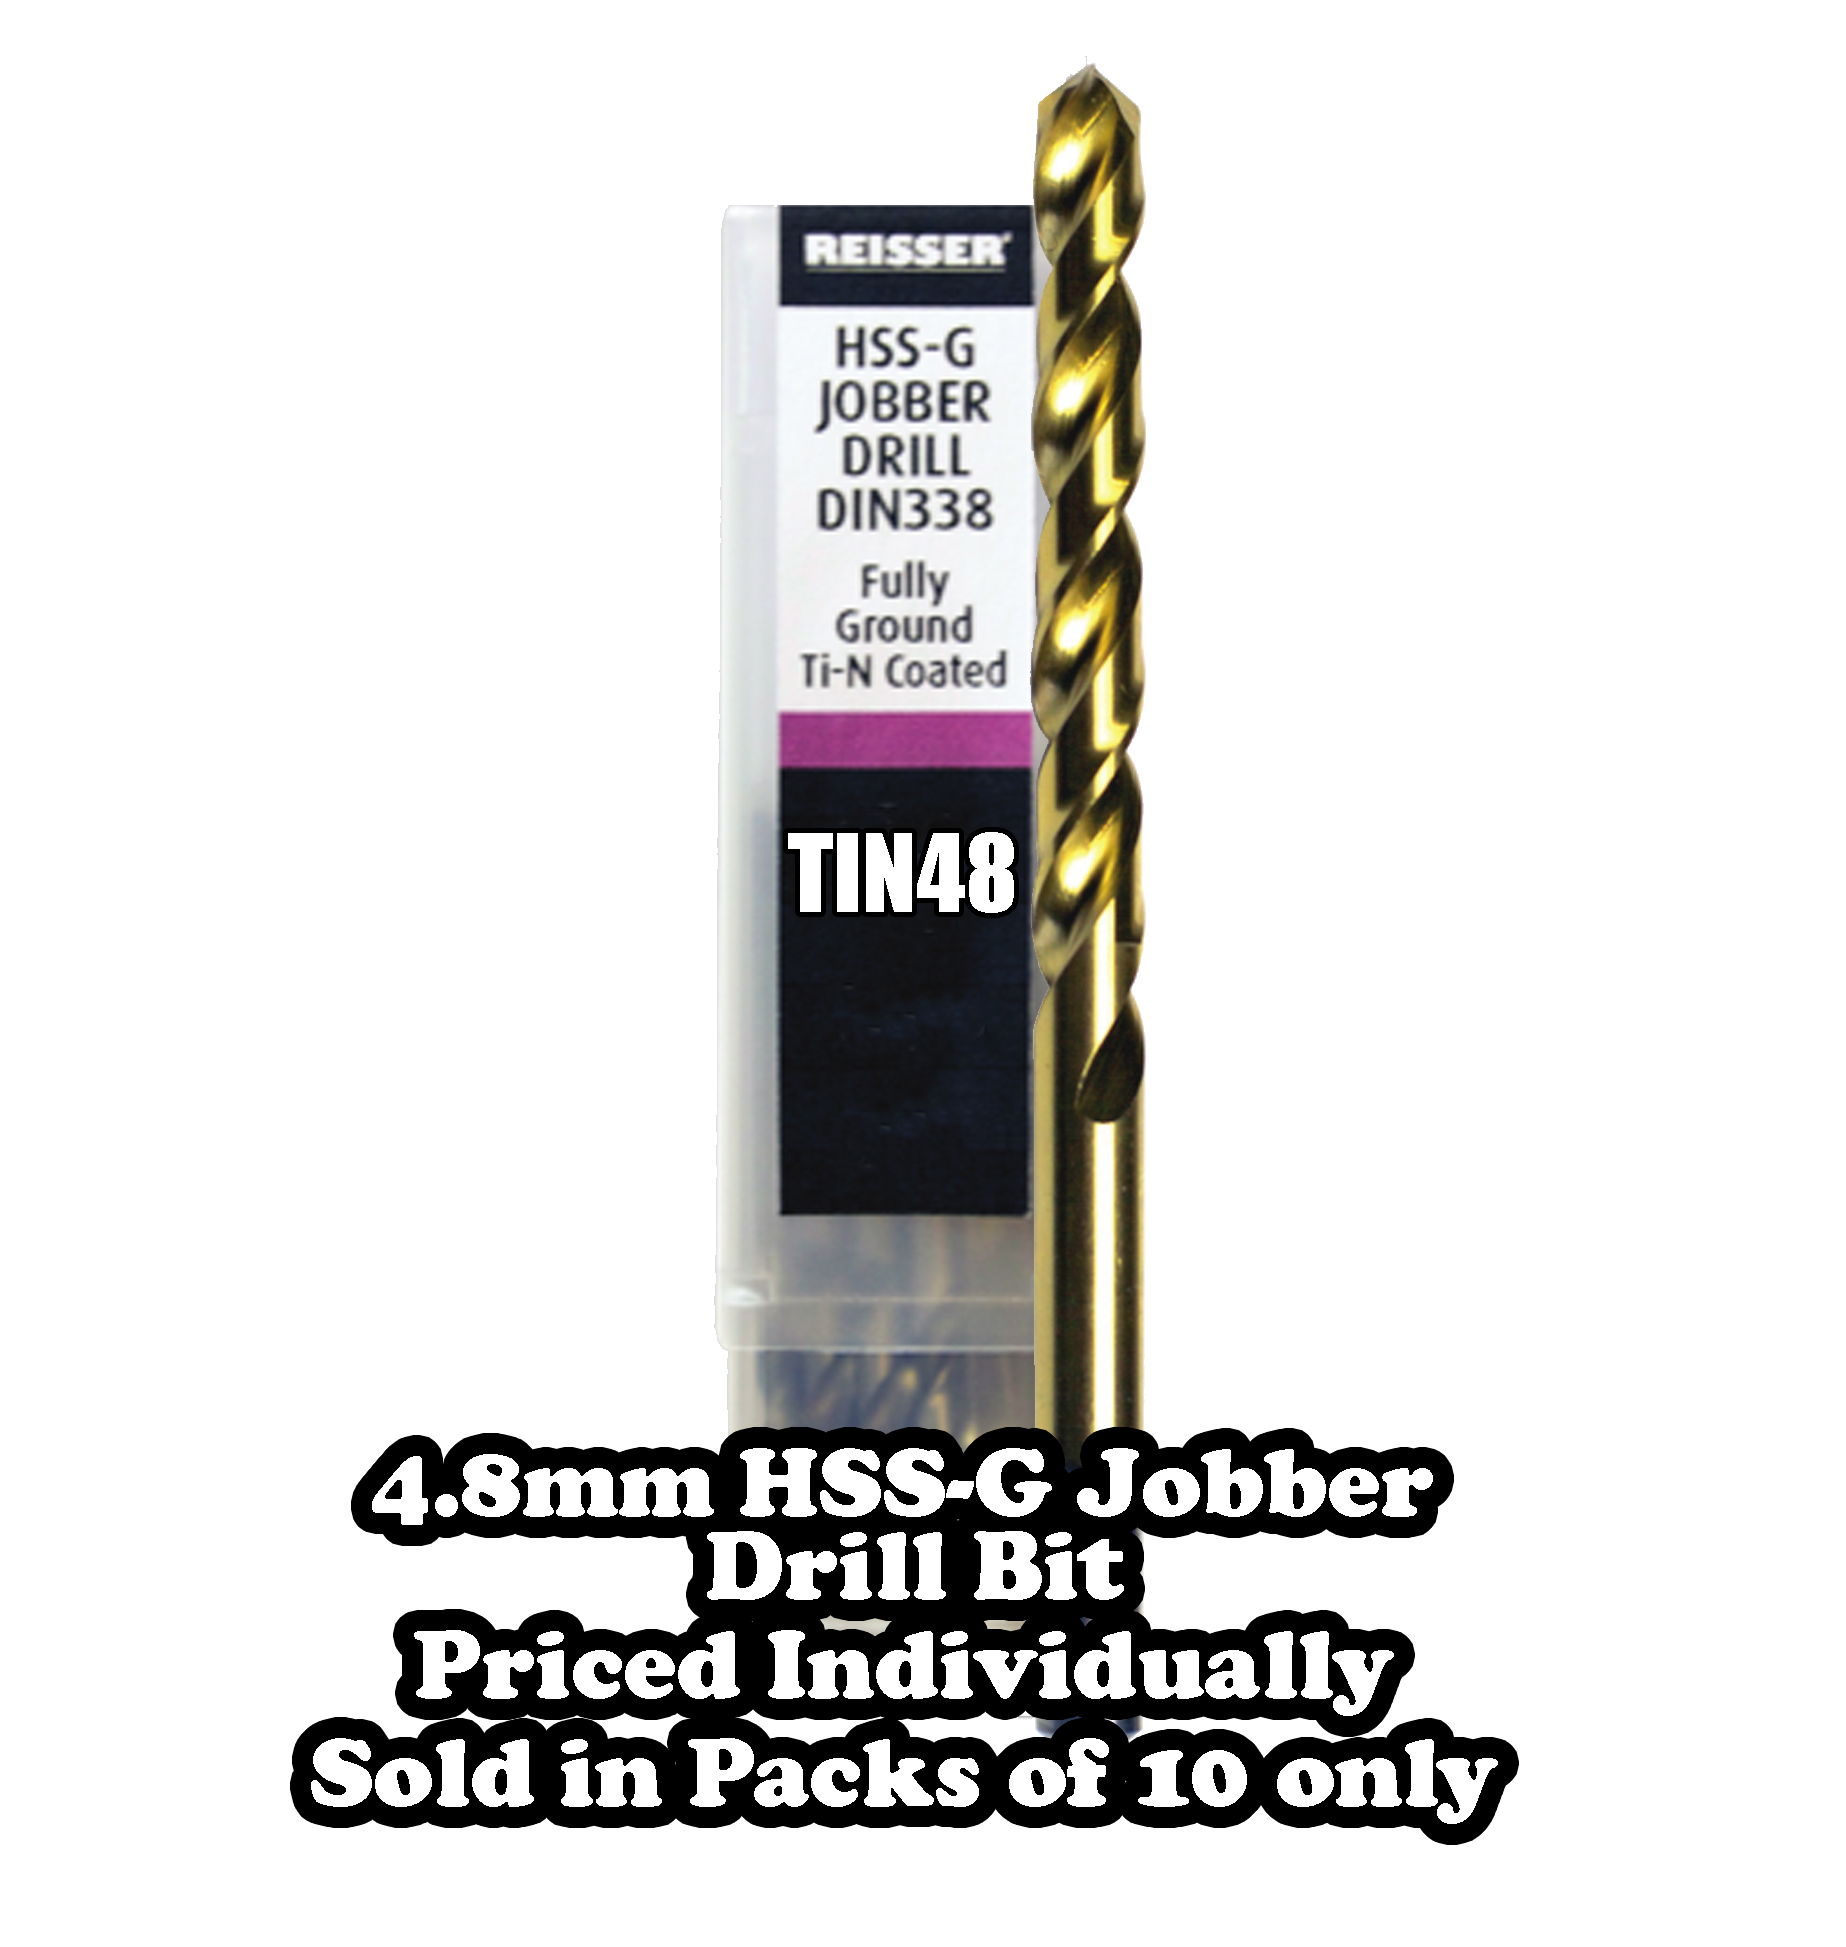 4.8mm HSS-G Jobber Drill Bit